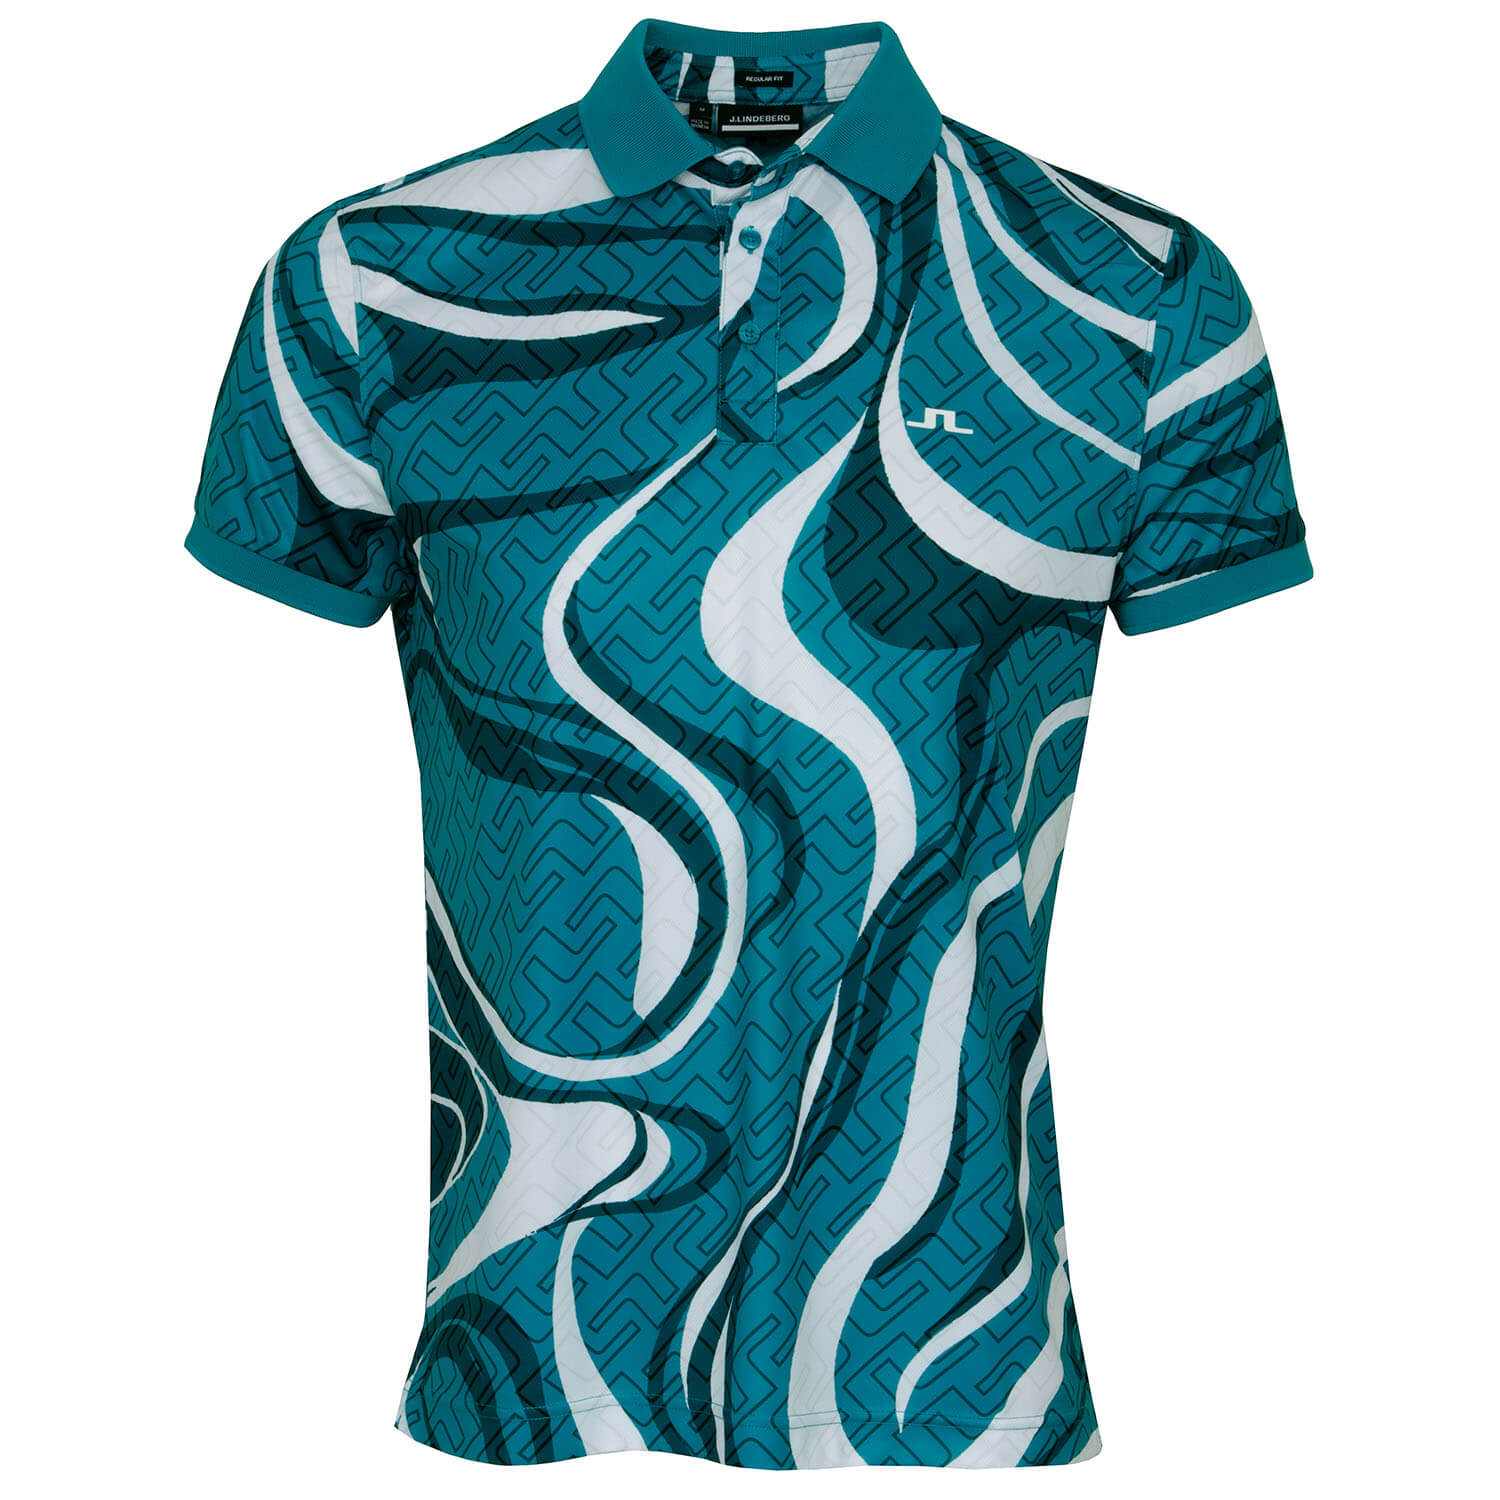 J Lindeberg Swirl Print Polo Shirt